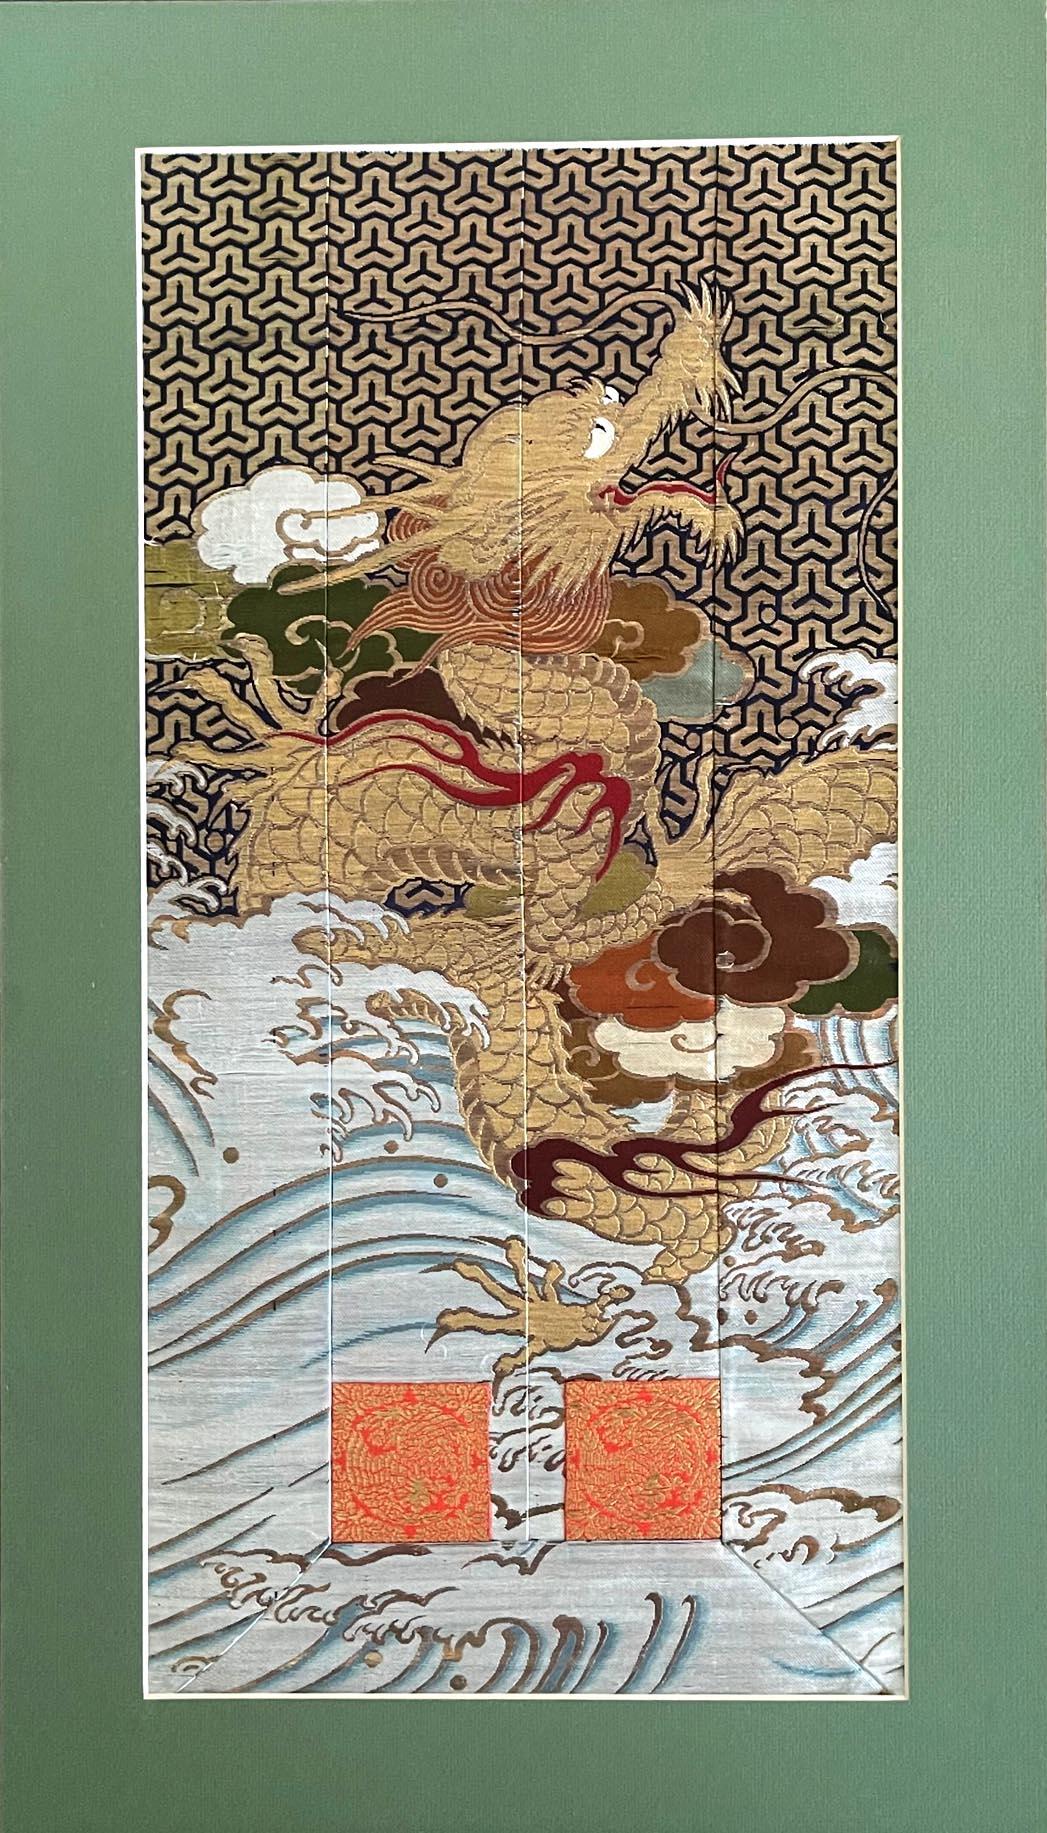 Textile tissé japonais encadré, datant de la fin du XIXe siècle et de la période Meiji. Probablement un fragment de robe de prêtre ou kesa, ce textile à plusieurs panneaux a été finement tissé avec des fils dorés qui représentent un dragon à cinq